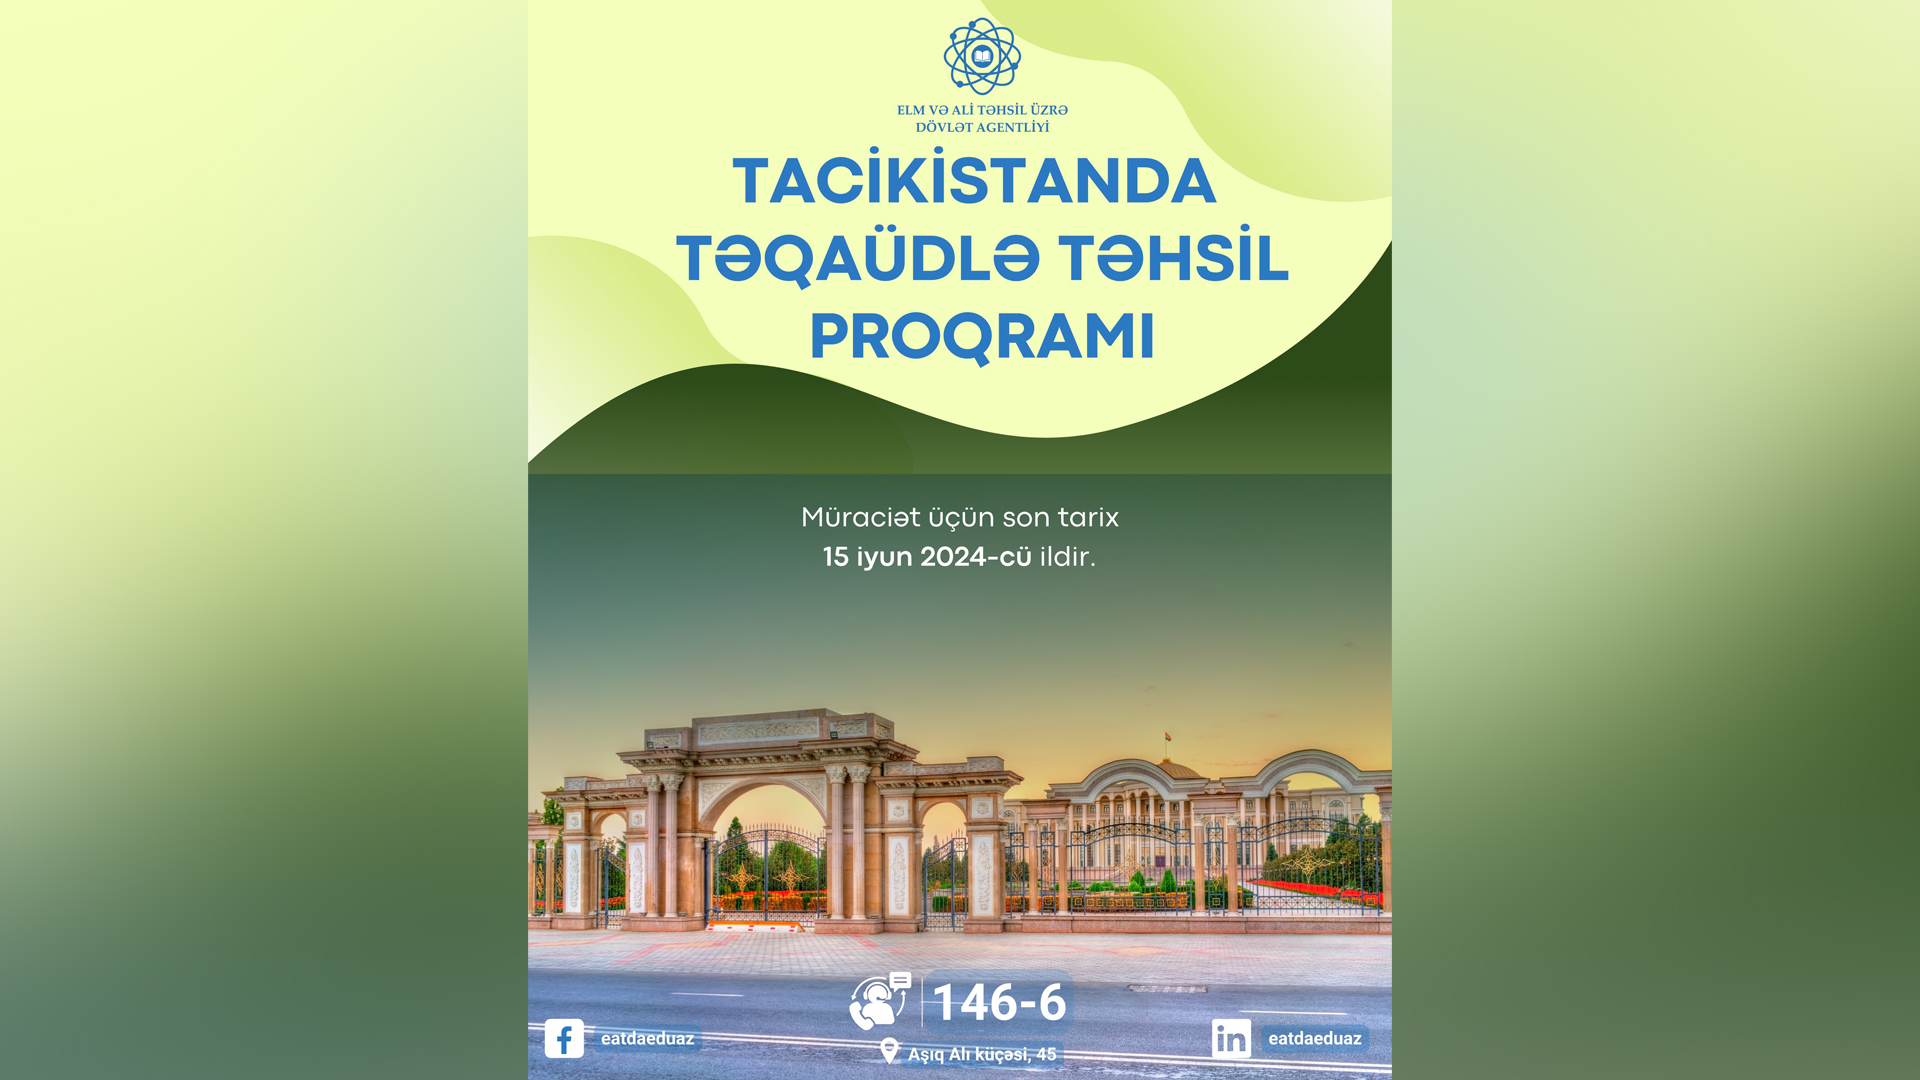 Вы сейчас просматриваете Tacikistanda təqaüdlə təhsil proqramı